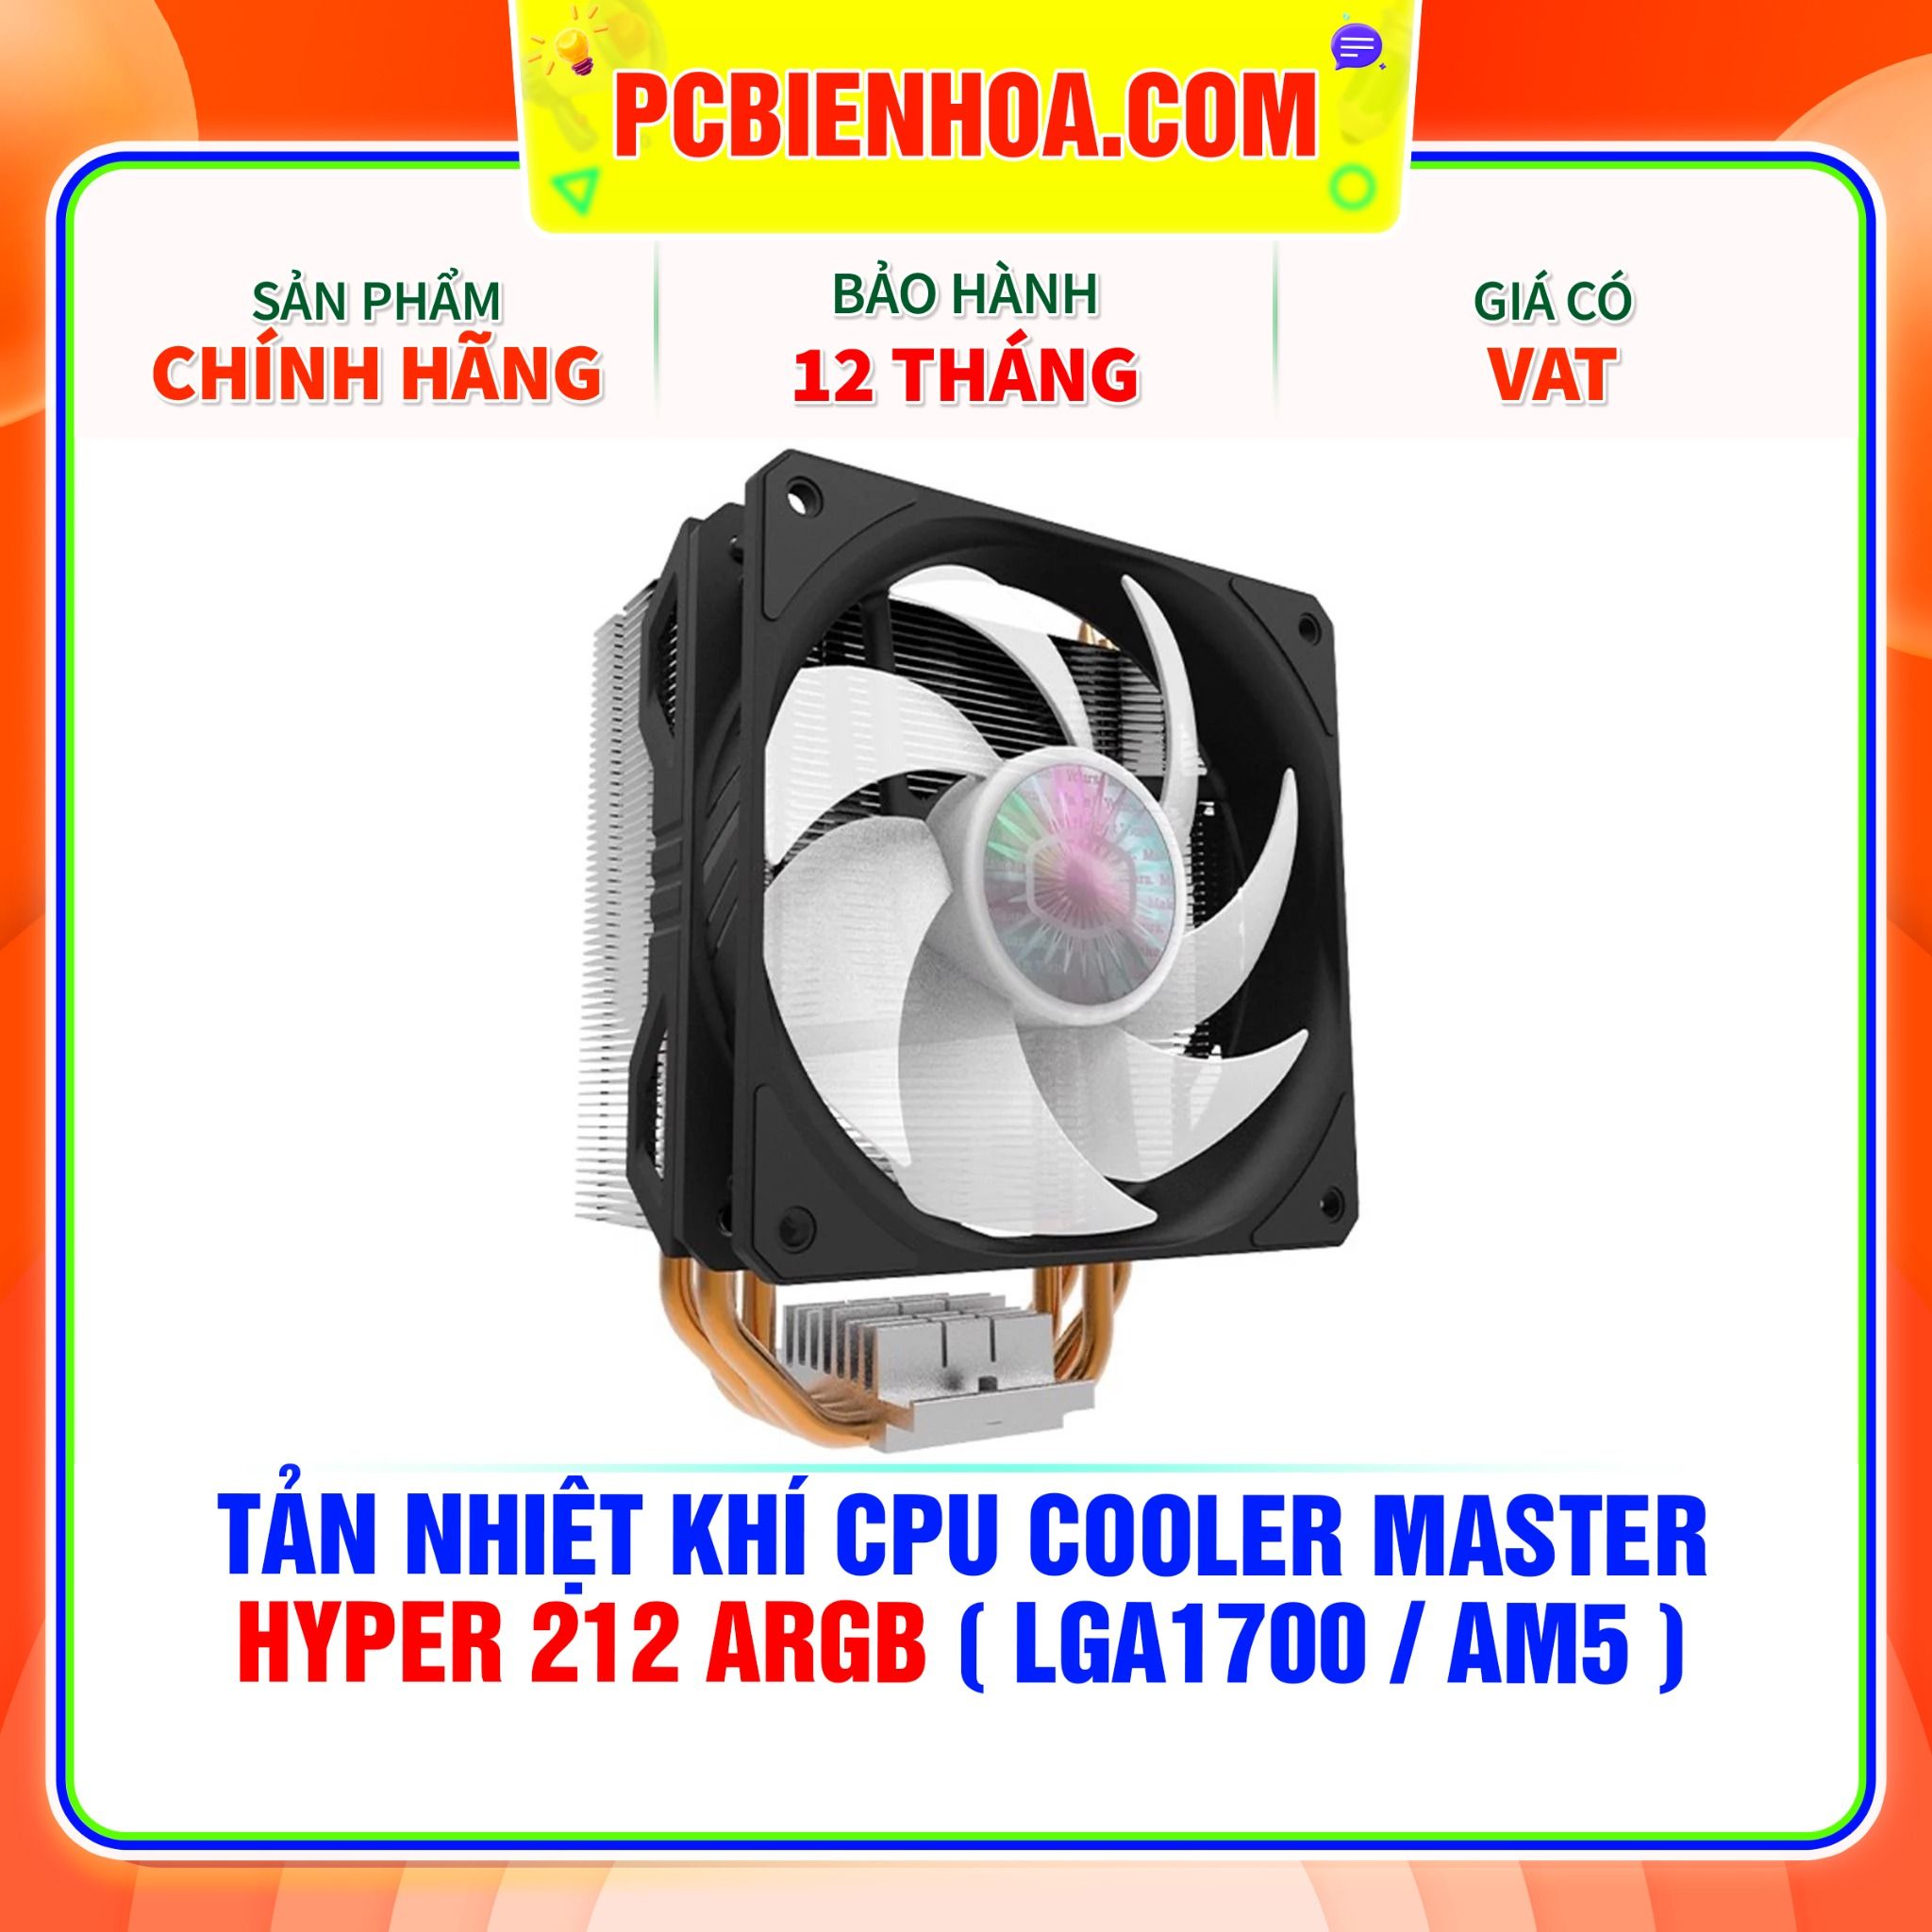  TẢN NHIỆT KHÍ CPU COOLER MASTER HYPER 212 ARGB ( HỖ TRỢ SOCKET LGA1700 / AM5 ) 